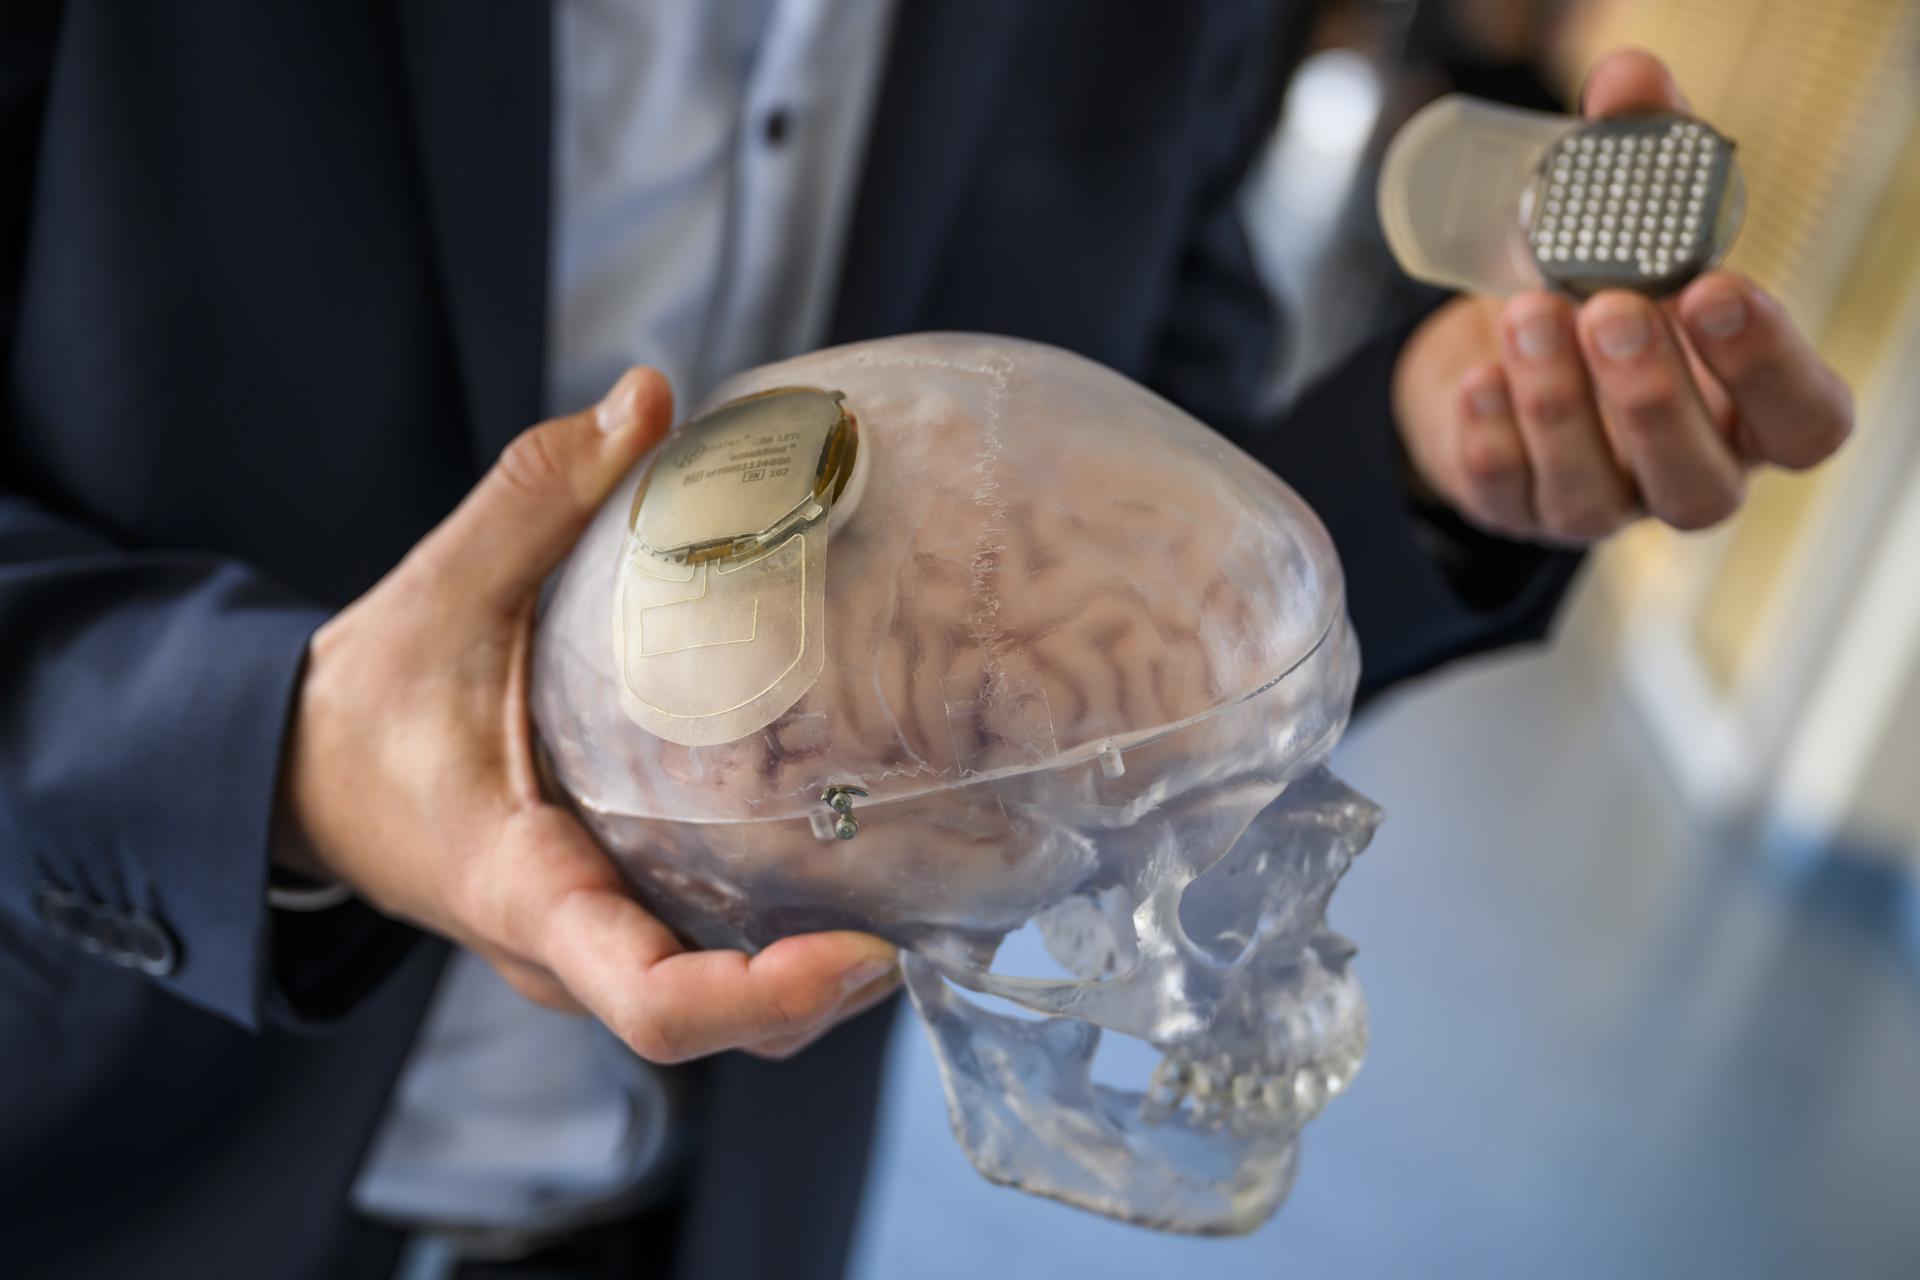 La nueva interfaz es capaz de "registrar la actividad cerebral en la superficie del córtex", explicó el investigador Guillaume Charvet, del Comisariado de Energía Atómica, institución francesa que ha trabajado en el proyecto junto al CHUV en el estudio (EFE)